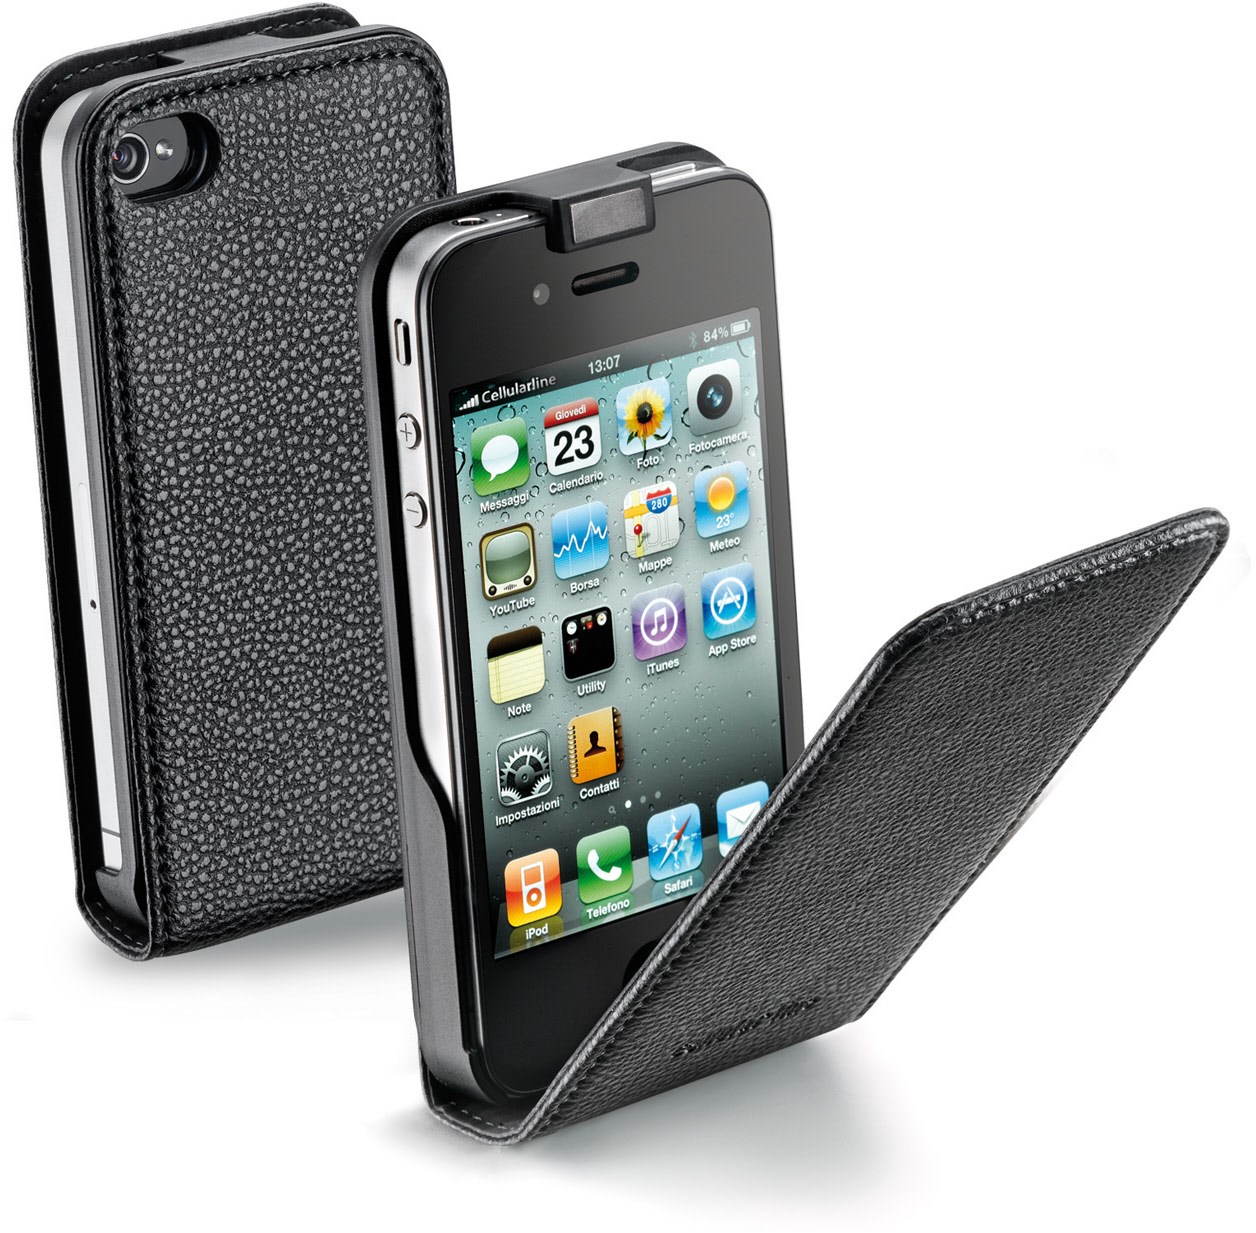 Klapptasche mit Magnet für iPhone 4 schwarz von Cellular Line